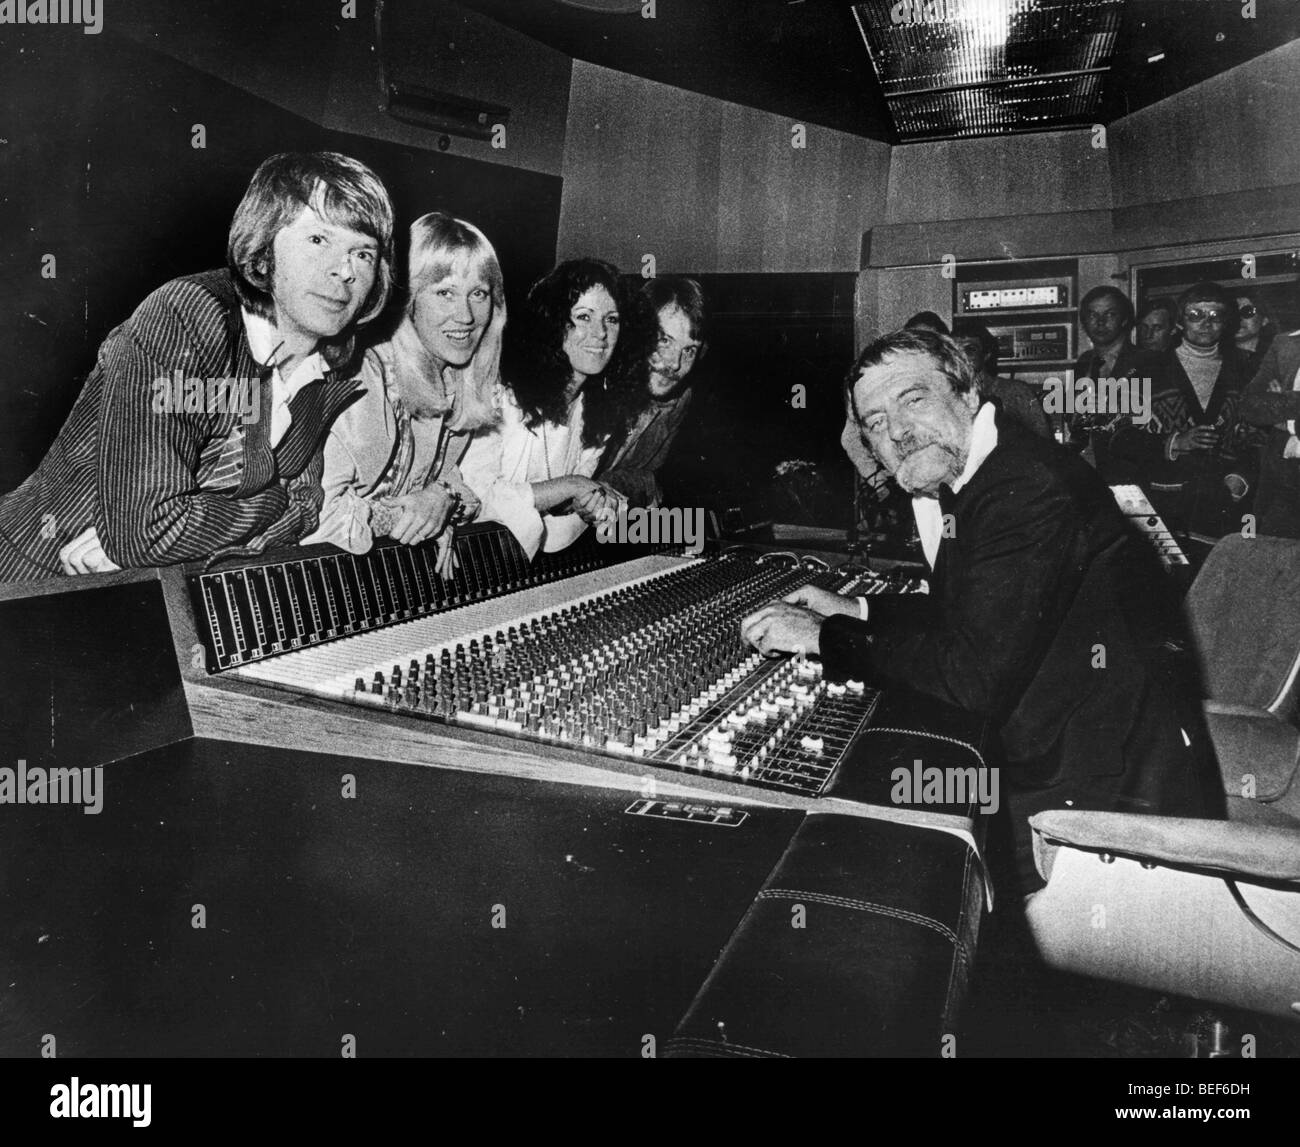 ABBA dans un studio d'enregistrement dans le milieu des années 1970 (L-R), Agnetha Fältskog Björn Ulvaeus, Anni-Frid Lyngstad, et Benny Andersson. Banque D'Images